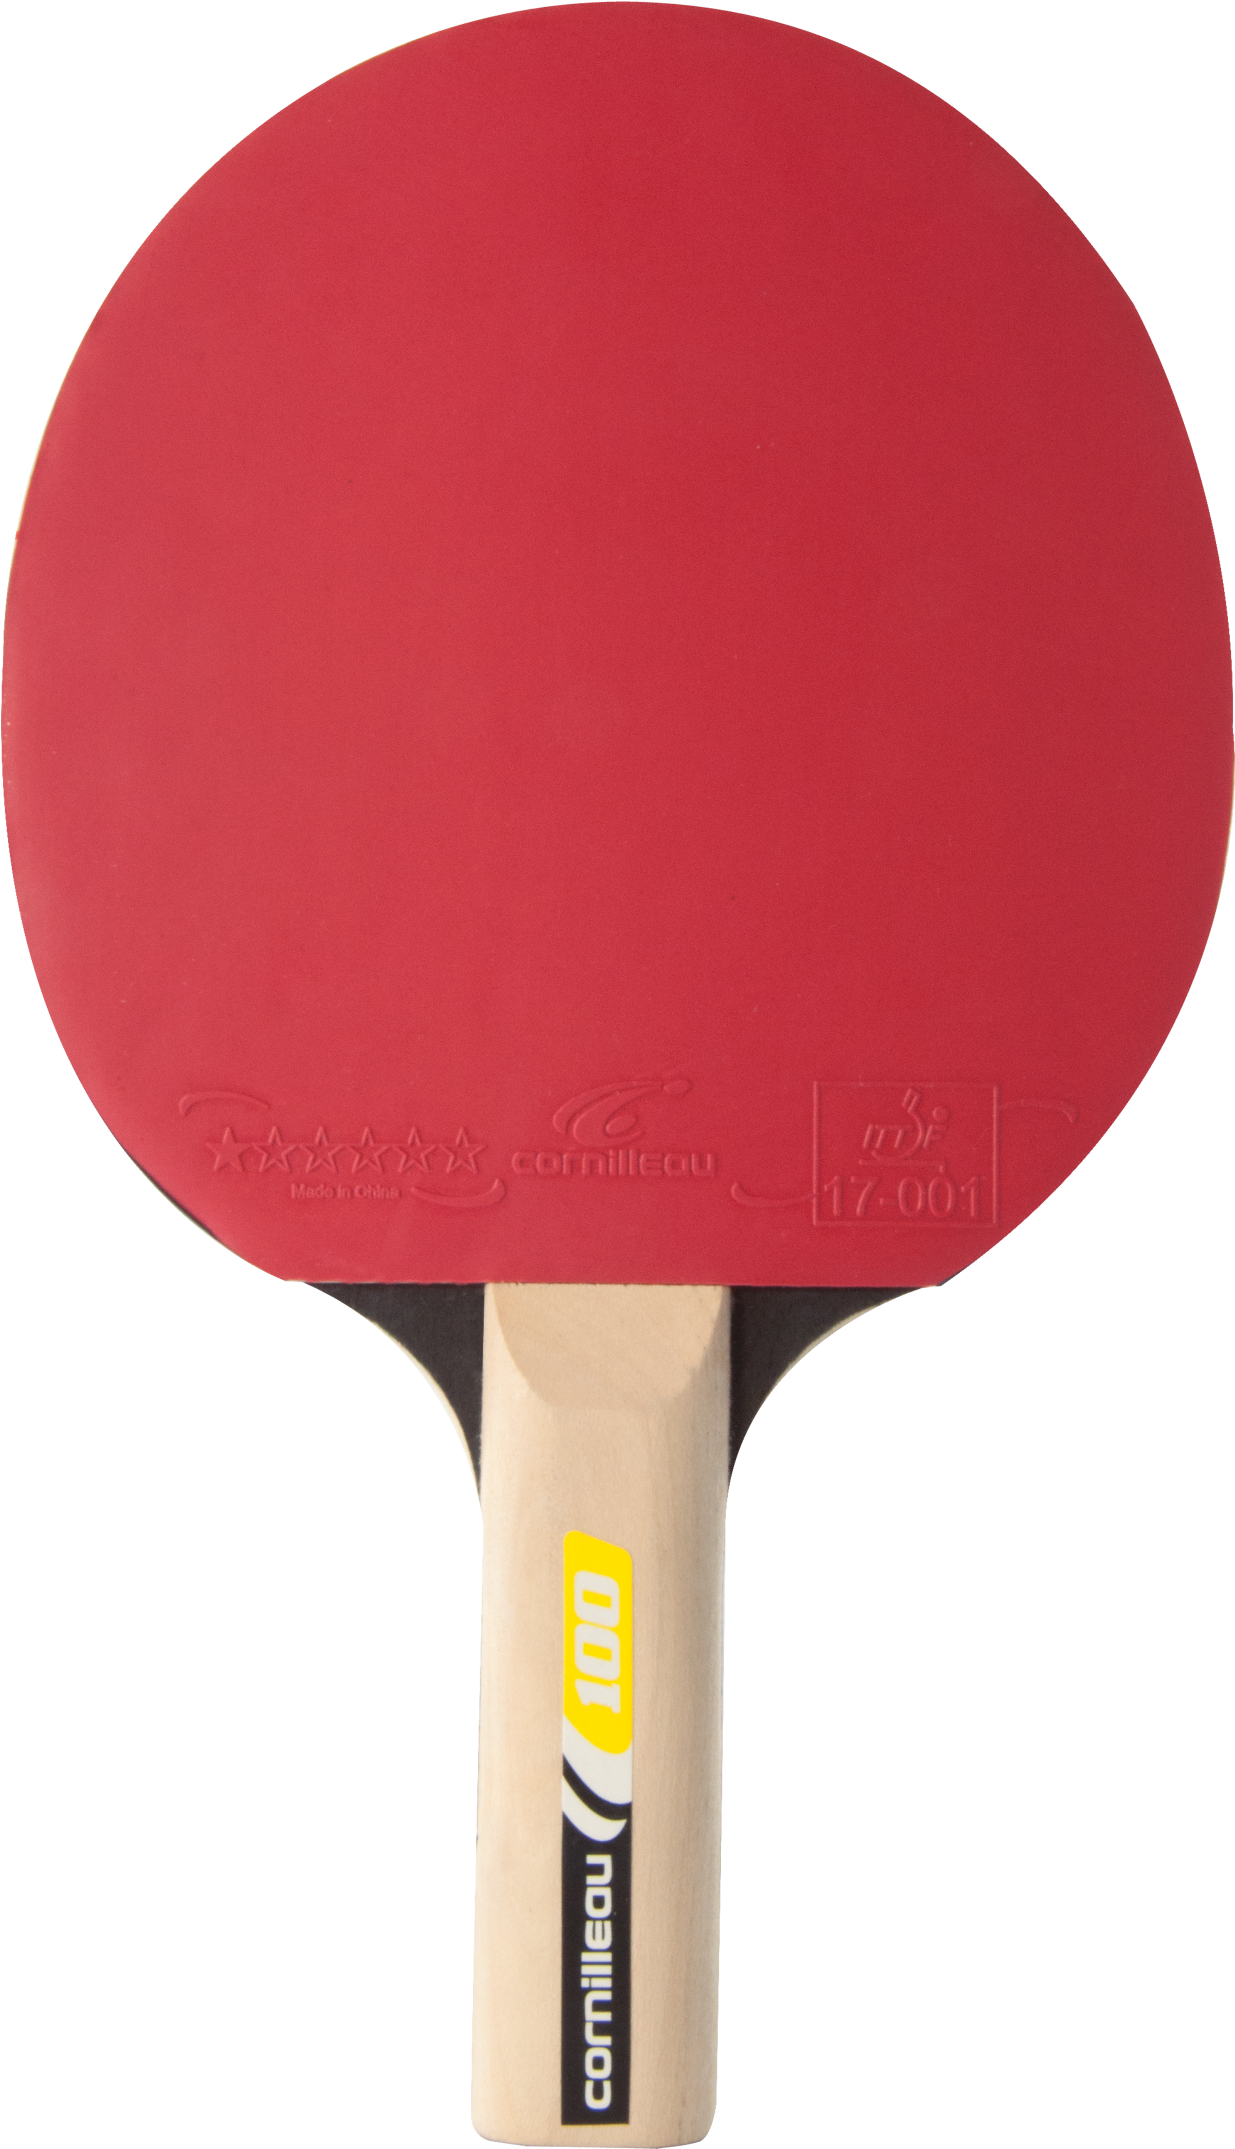 Joola Table Tennis Racket (2362x2362)